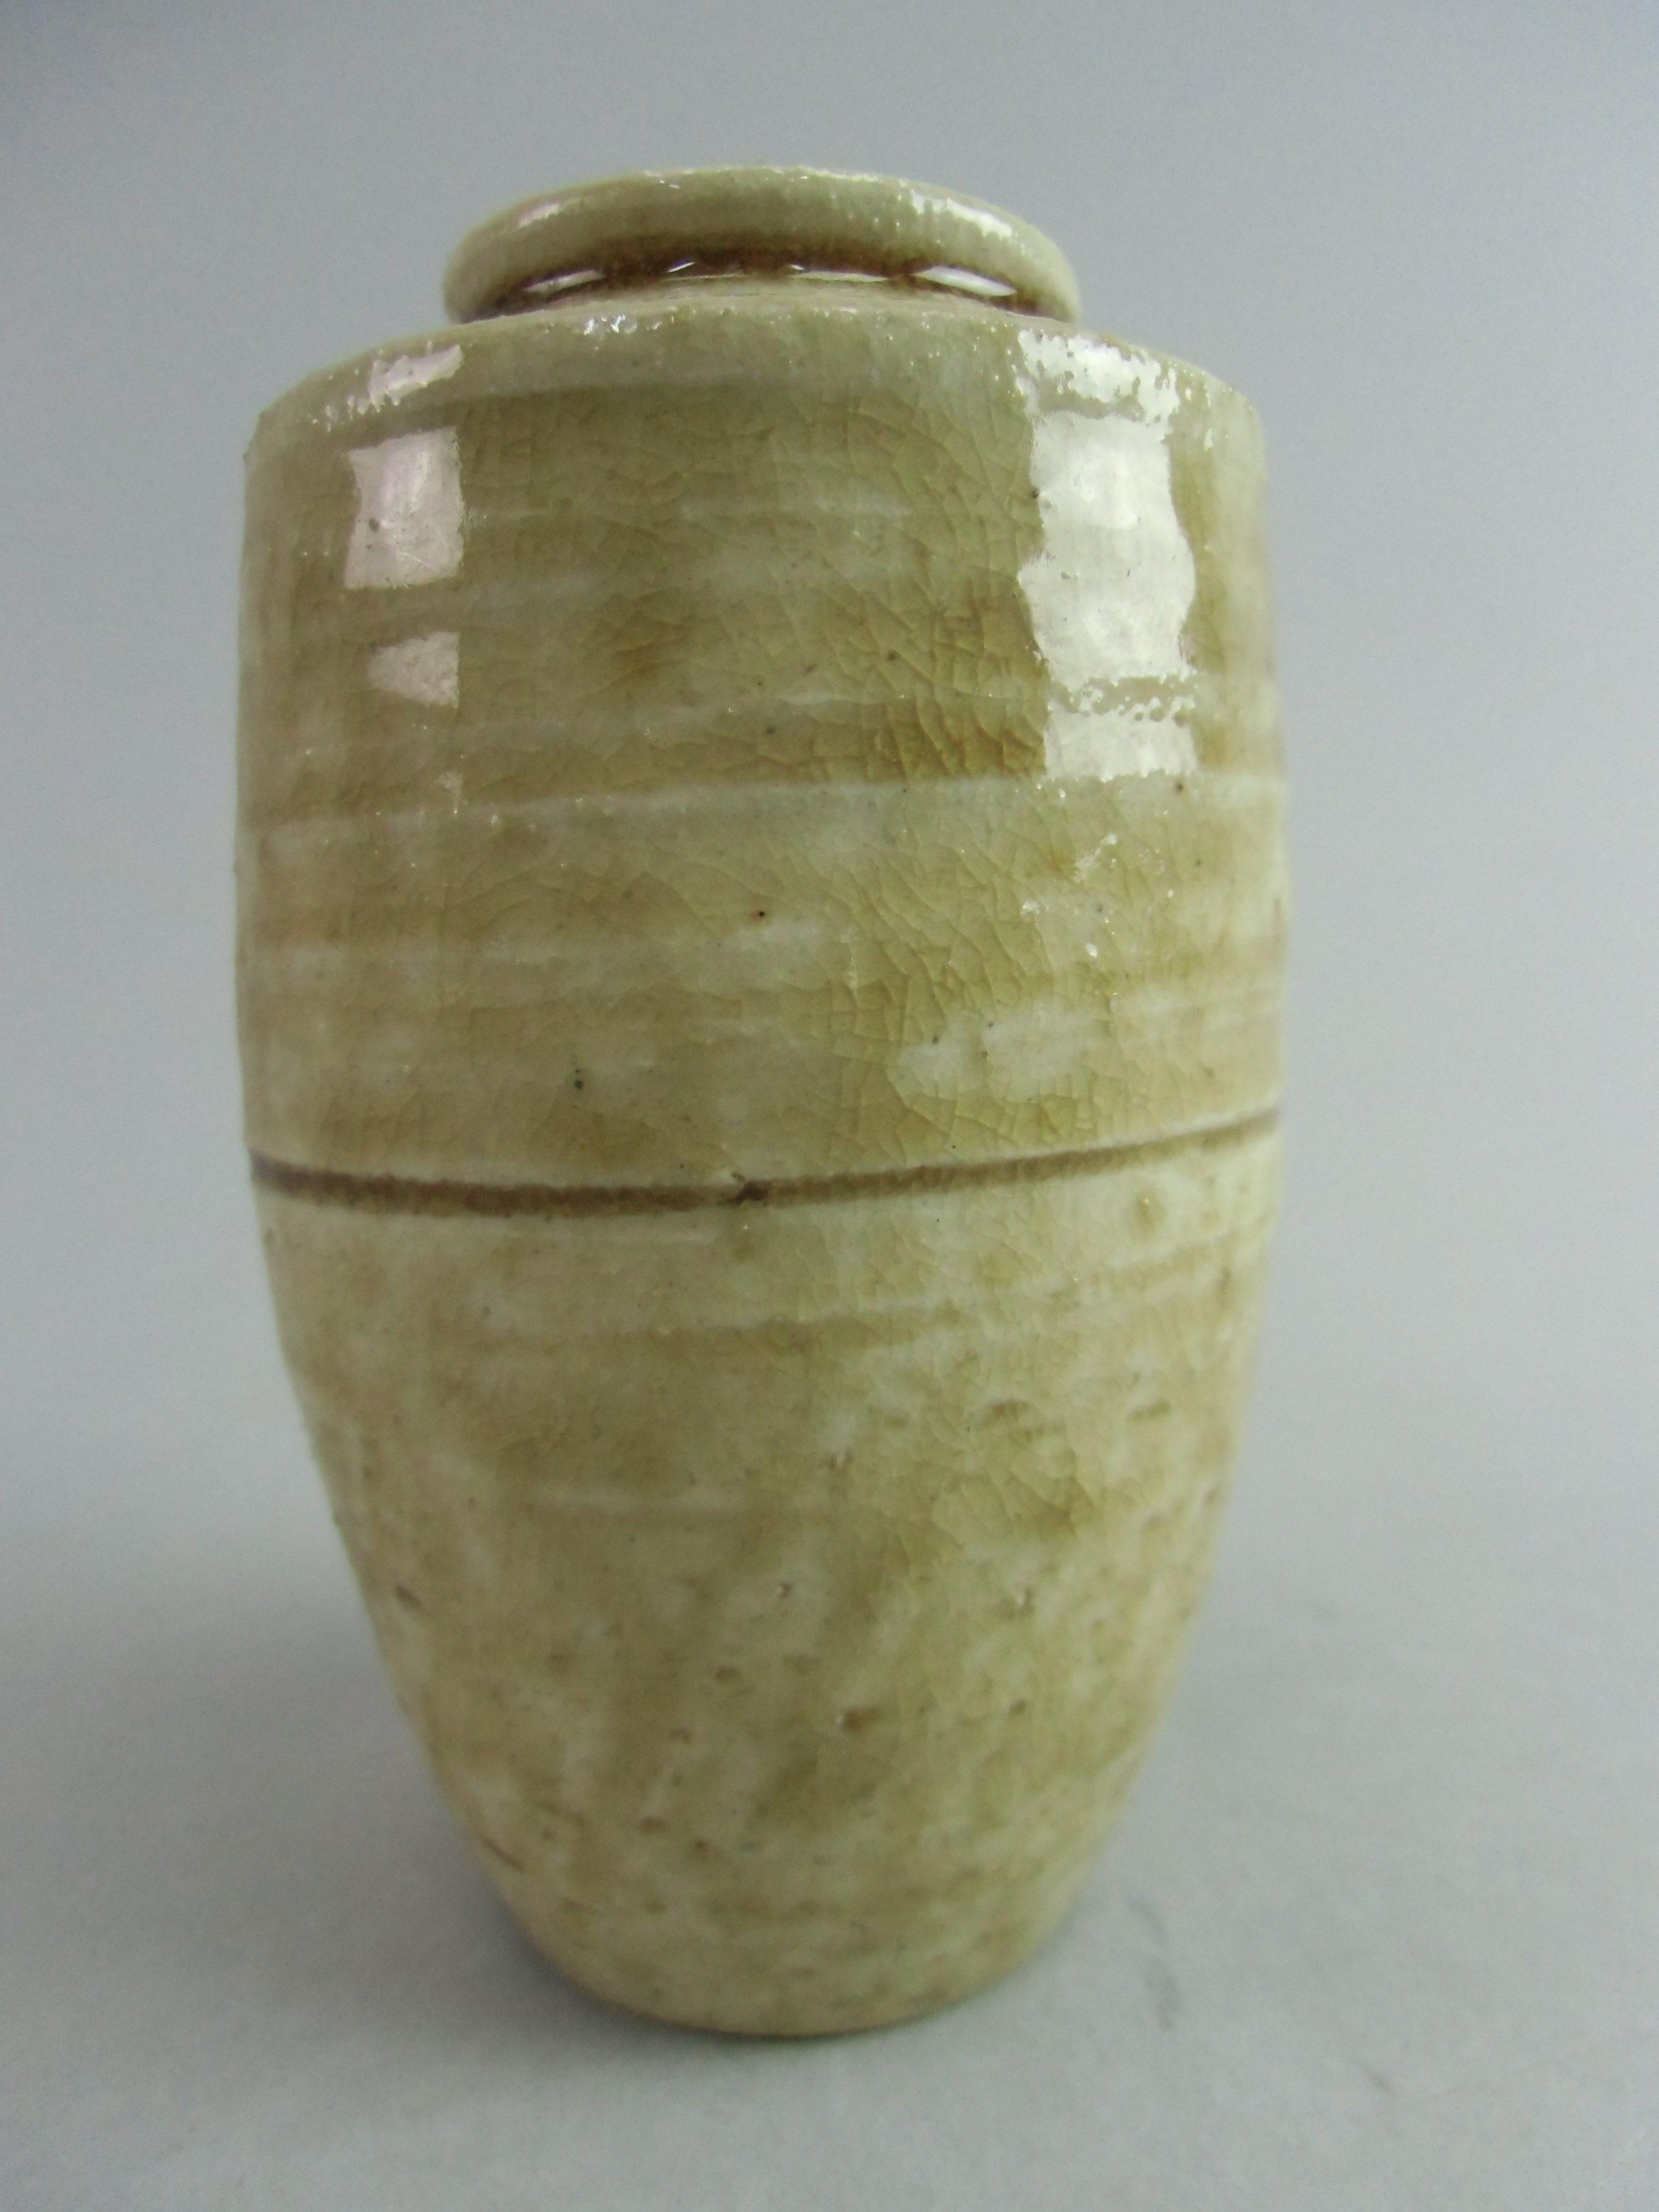 Japanese Ki Seto Ware Mini Flower Vase Vtg Pottery Beige Green Ikebana MFV37